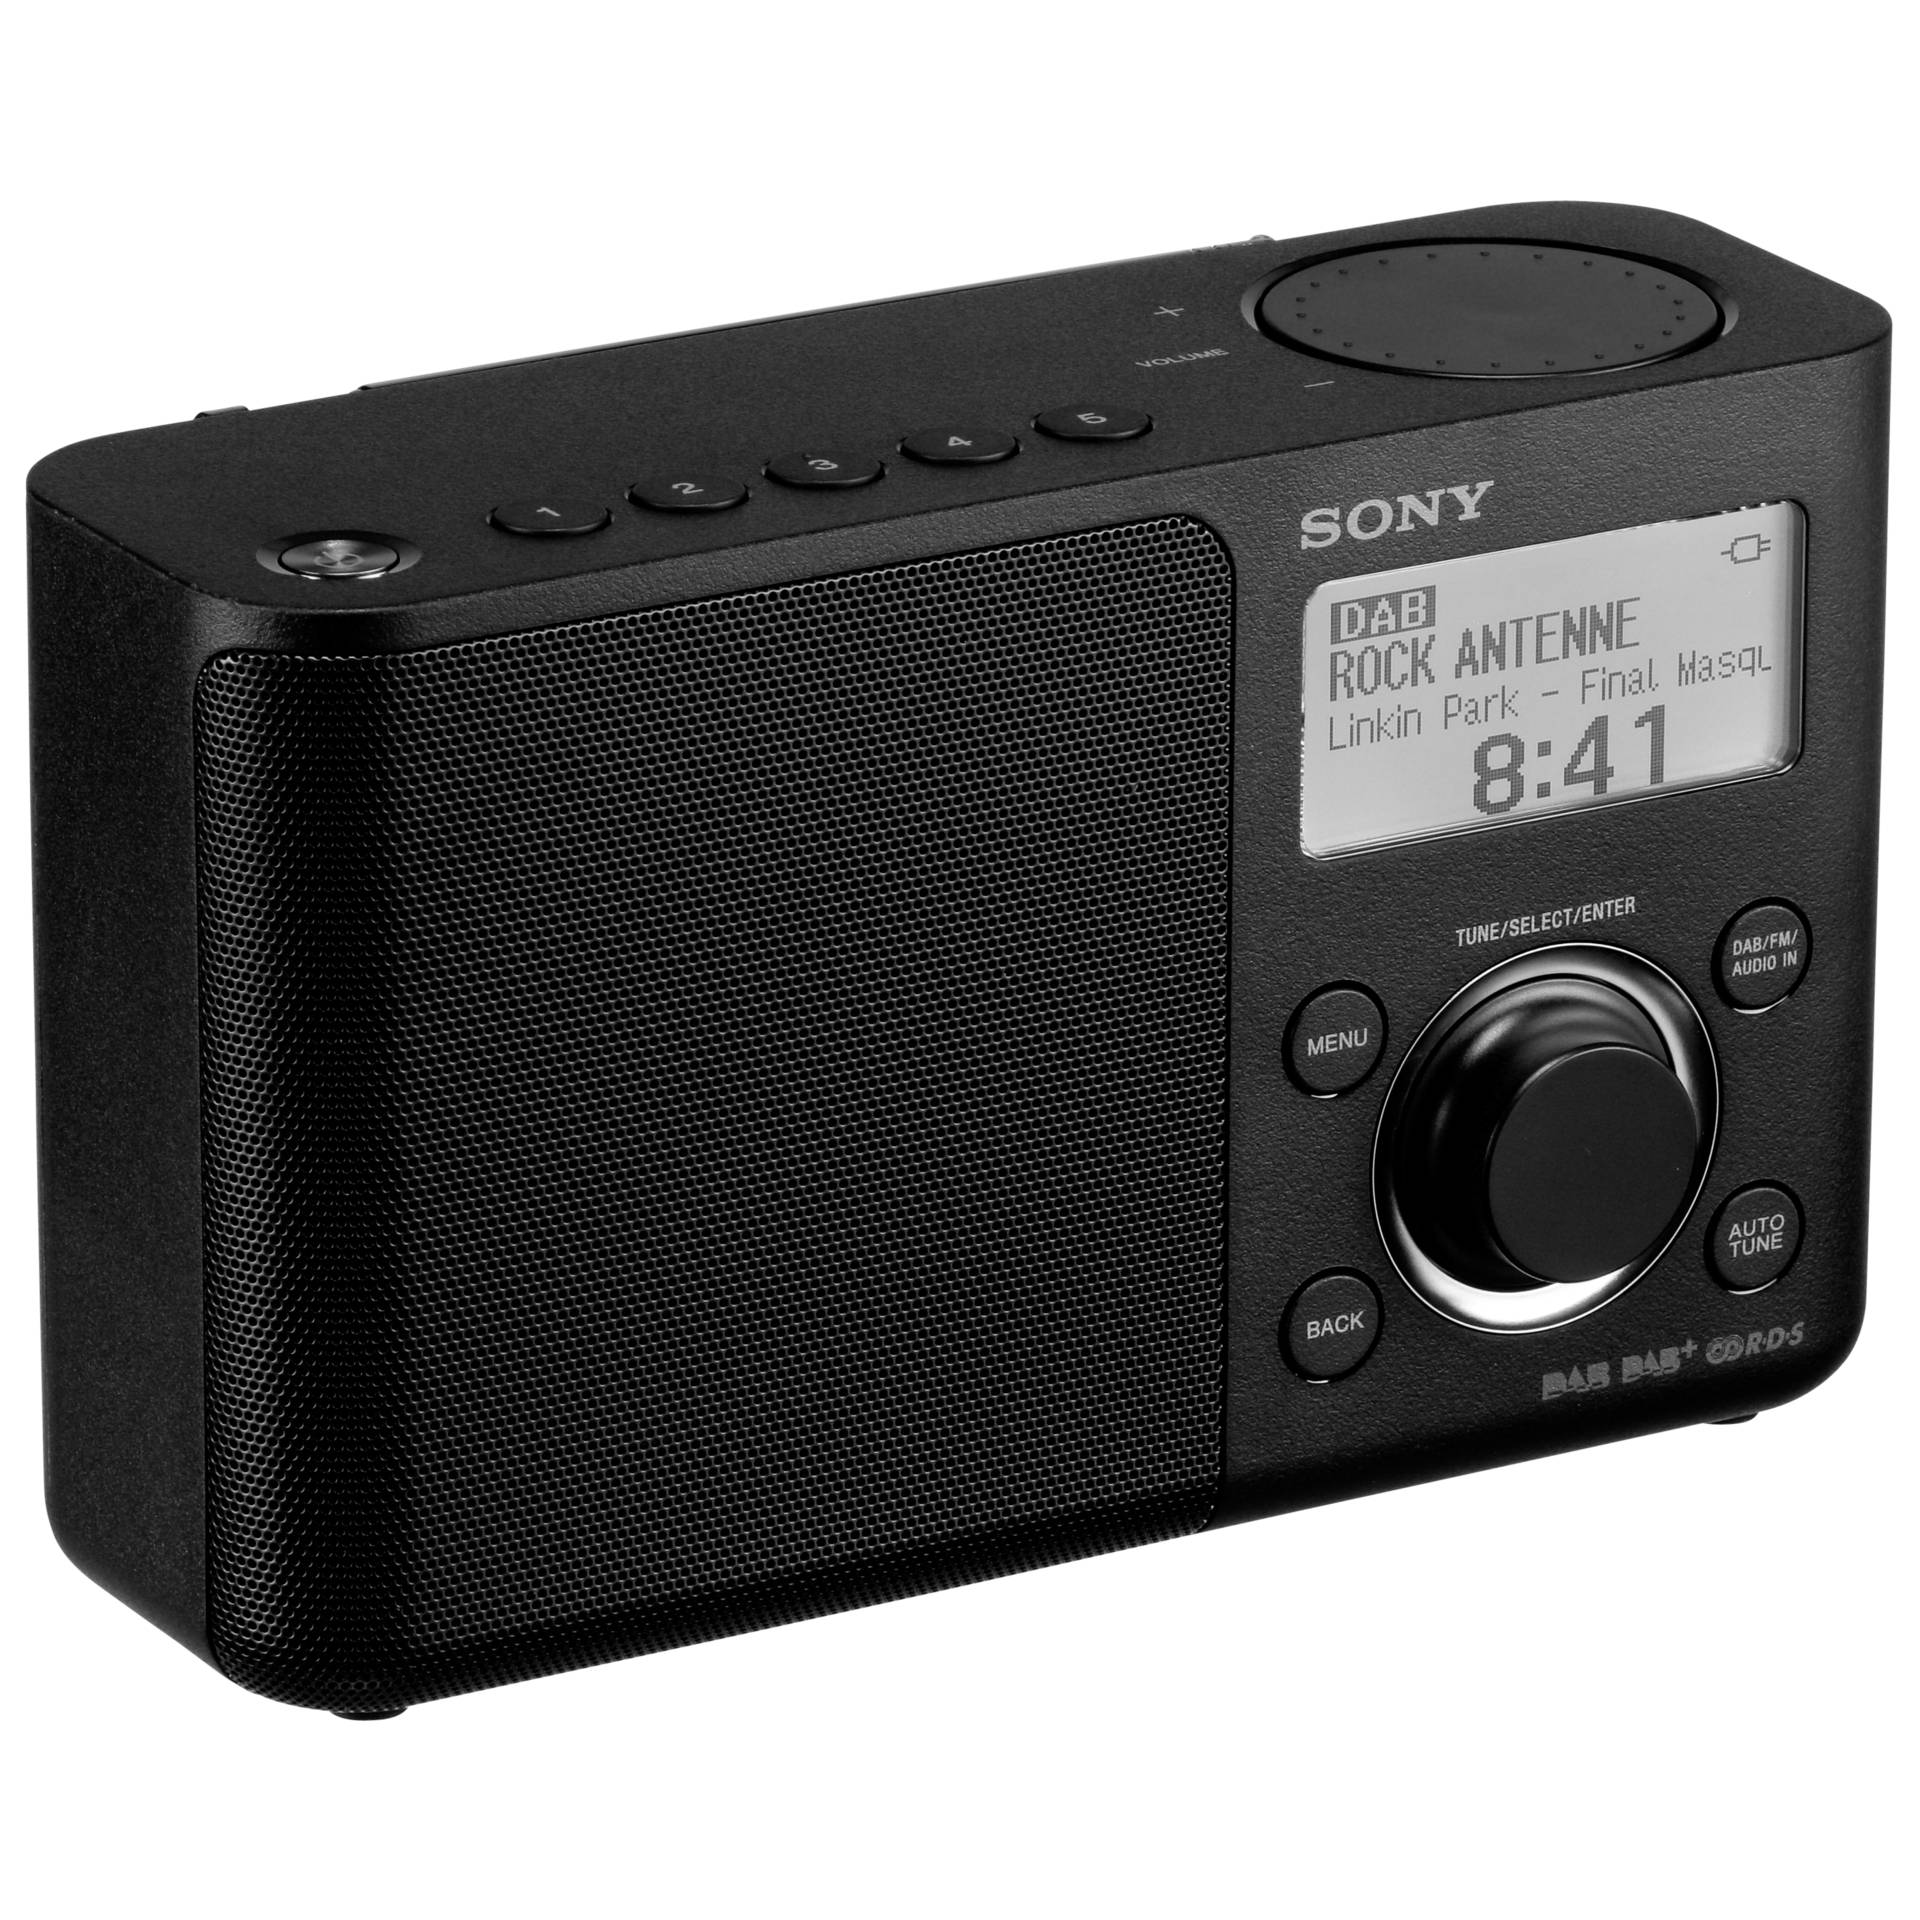 -Schwarz Accessories -Sony -XDR-S61D Sony DAB-Radio -Tragbares